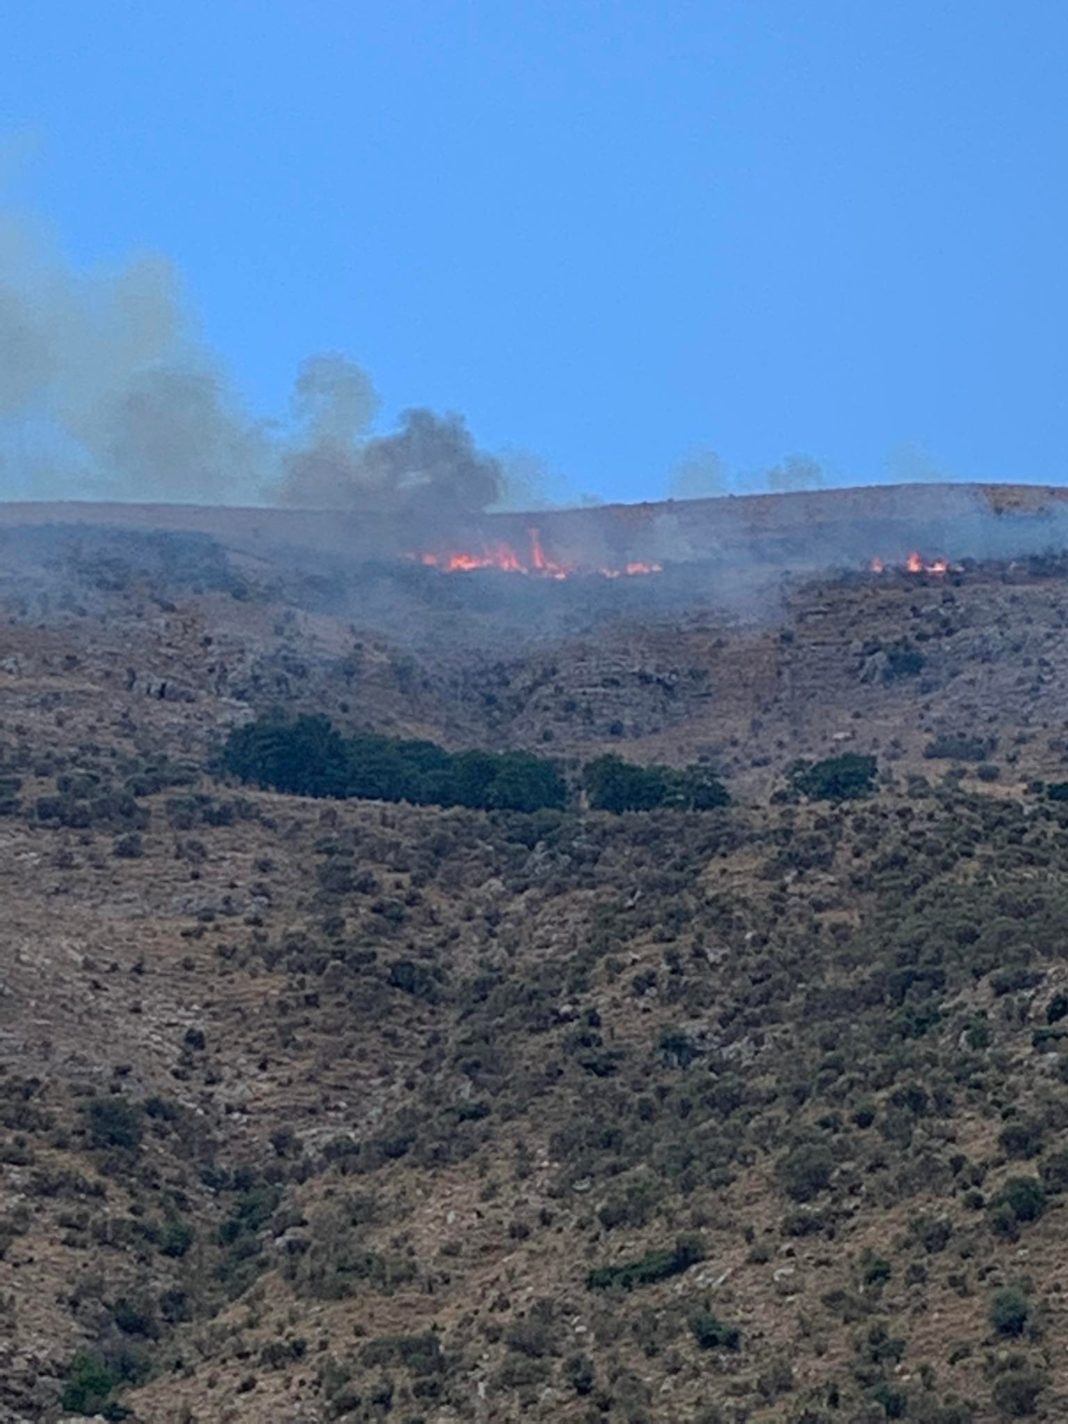 Πυρκαγιά σε χαμηλή βλάστηση στη Σαγιάδα Θεσπρωτίας - Κινητοποιήθηκαν επίγειες και εναέριες δυνάμεις